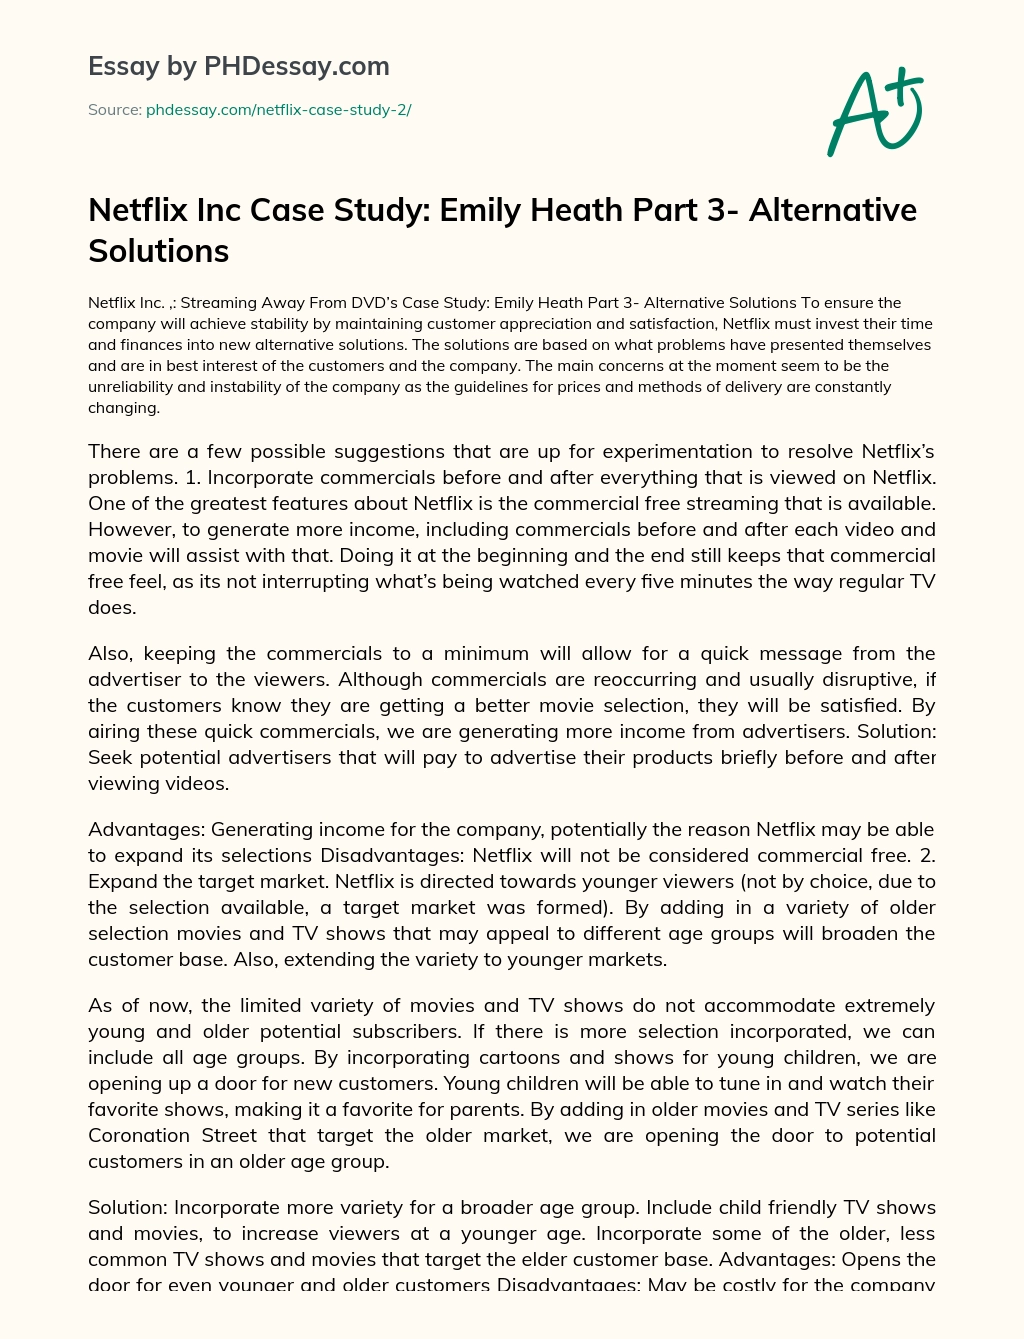 Netflix Inc Case Study: Emily Heath Part 3- Alternative Solutions essay